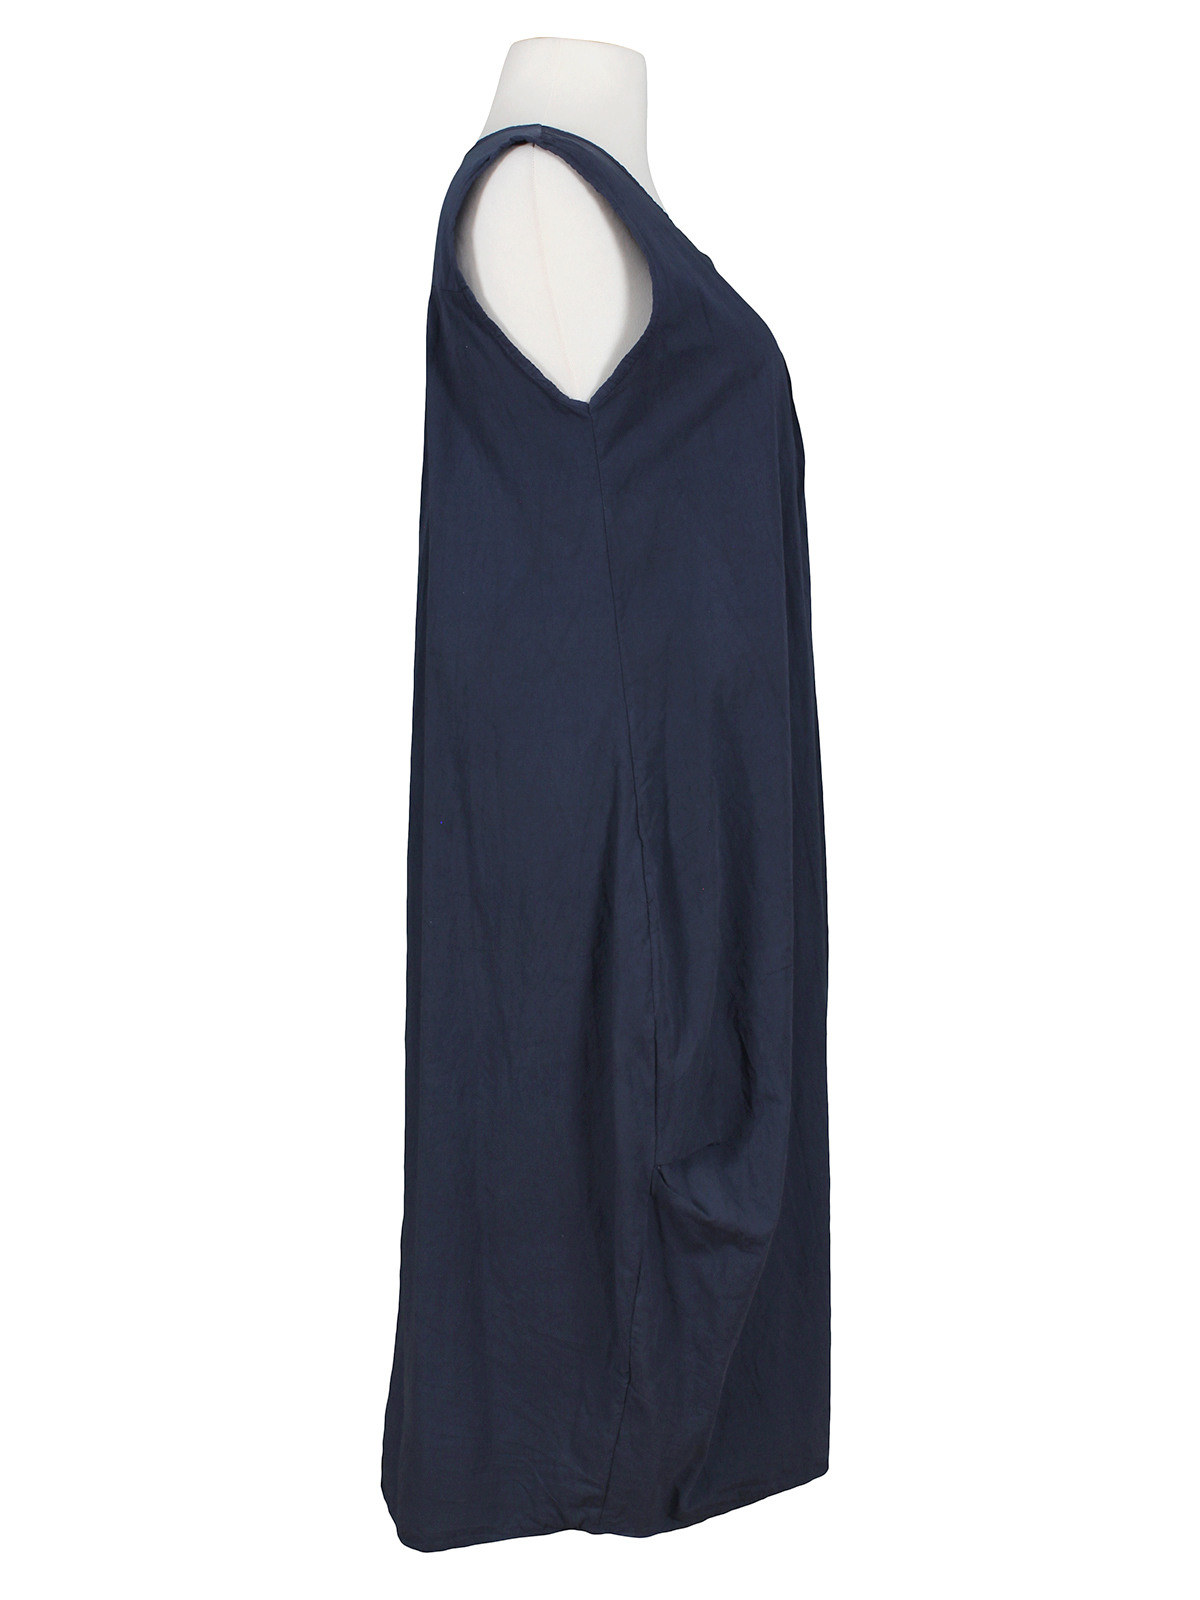 Kleid Baumwolle Blau Von Spaziodonna  Meinkleidchen